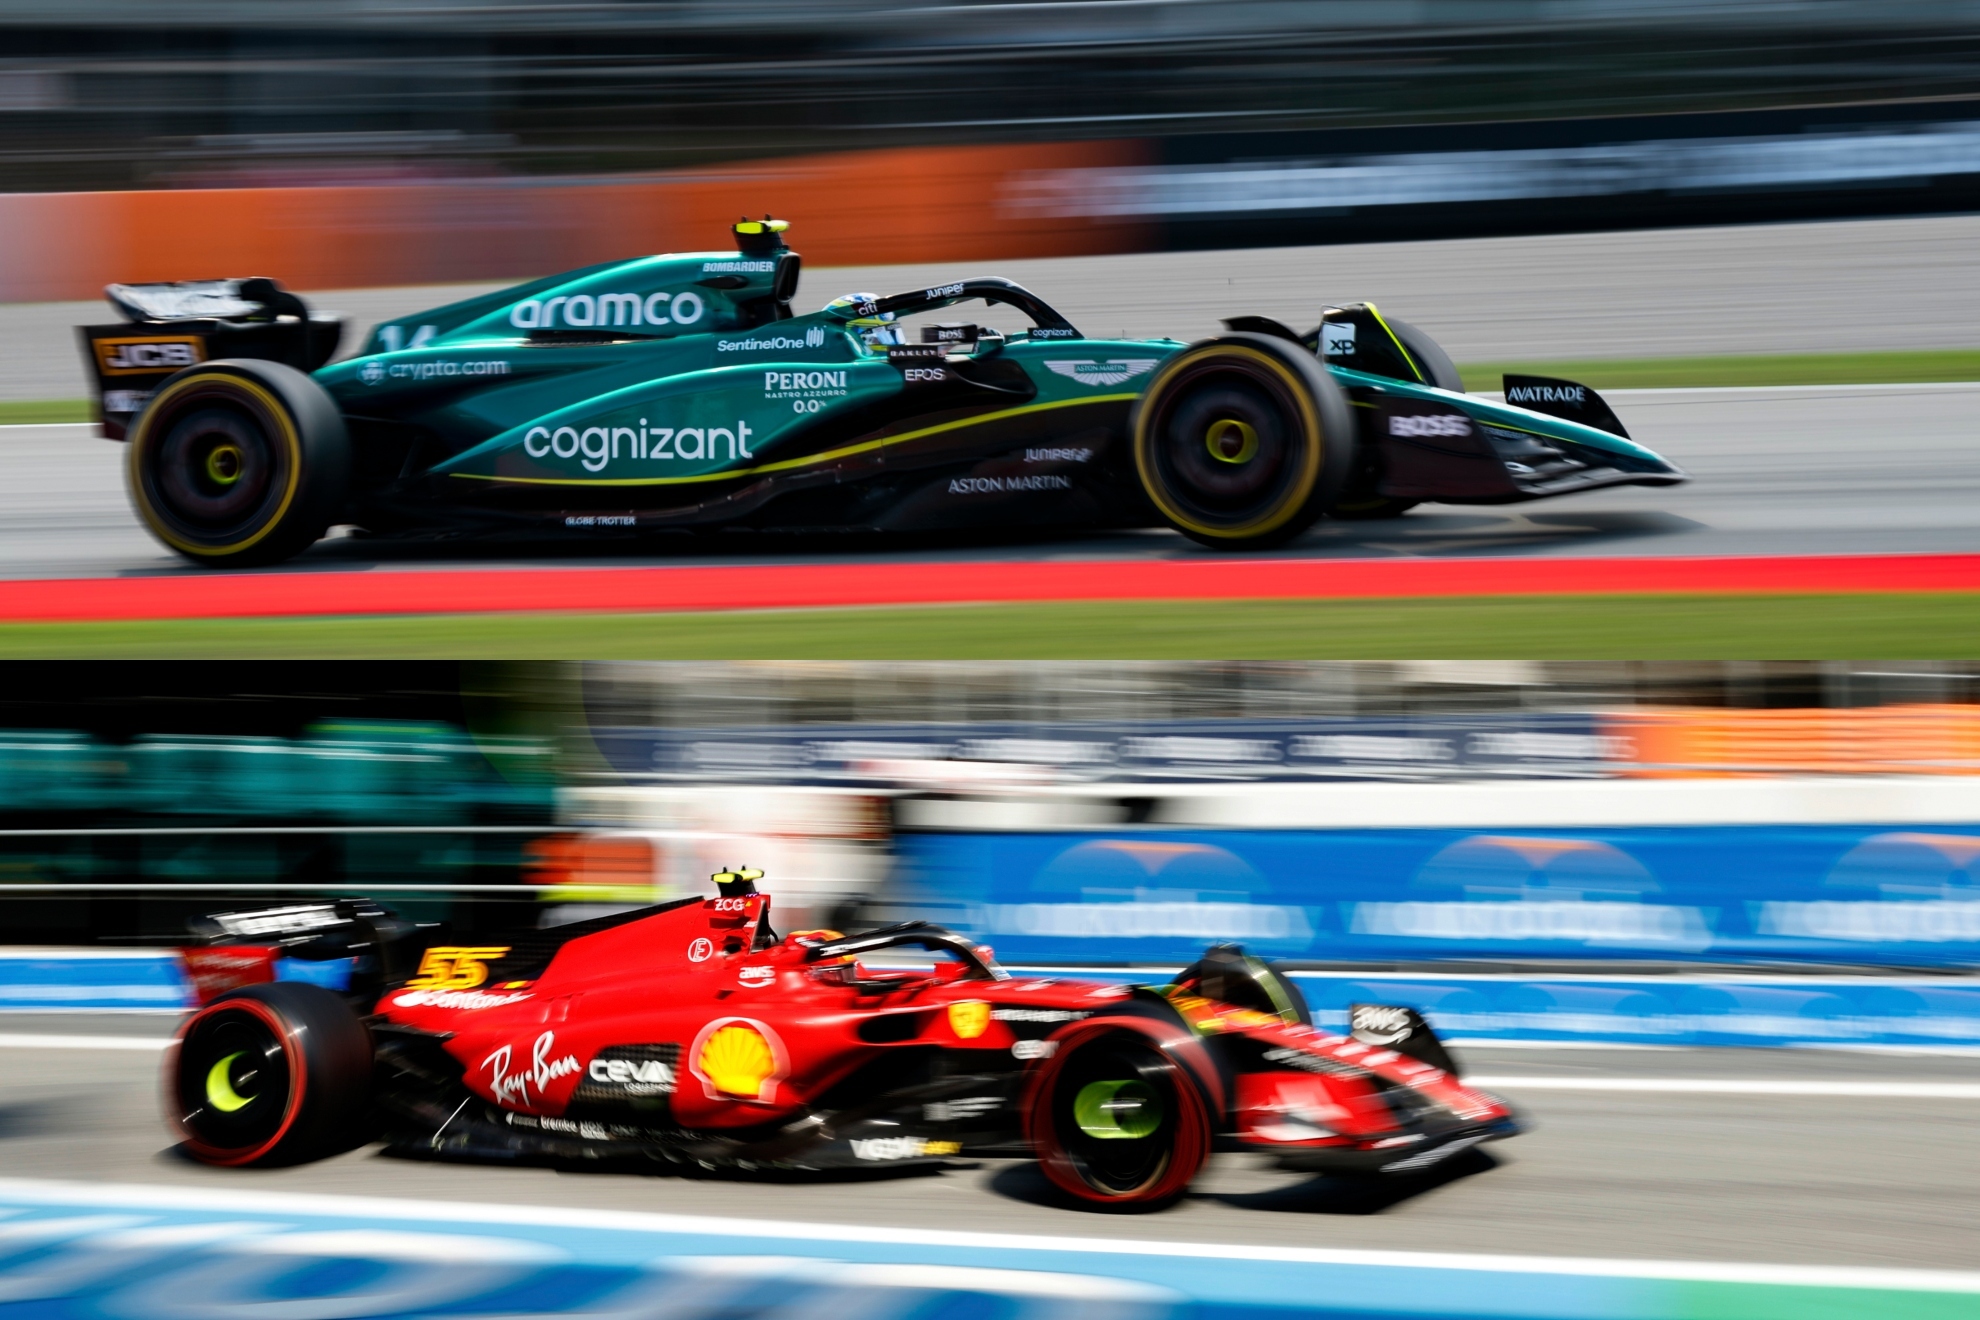 Clasificación y parrilla del Gran Premio de España de Fórmula 1: Verstappen pole, Sainz 2º y Fernando Alonso 9º